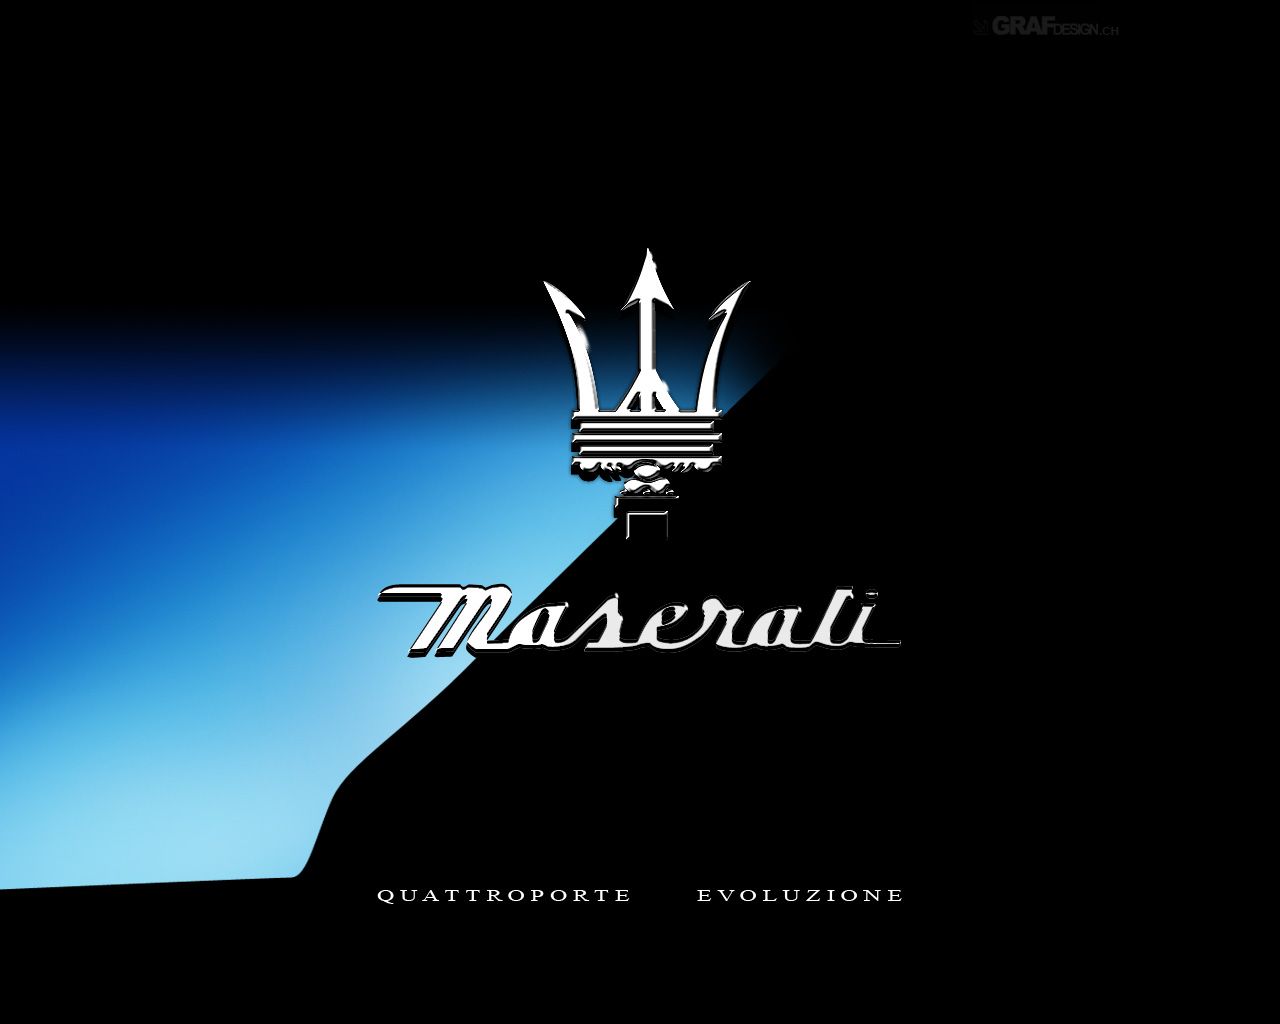 Sh S On M R Ti Maserati Luxury Car Logos